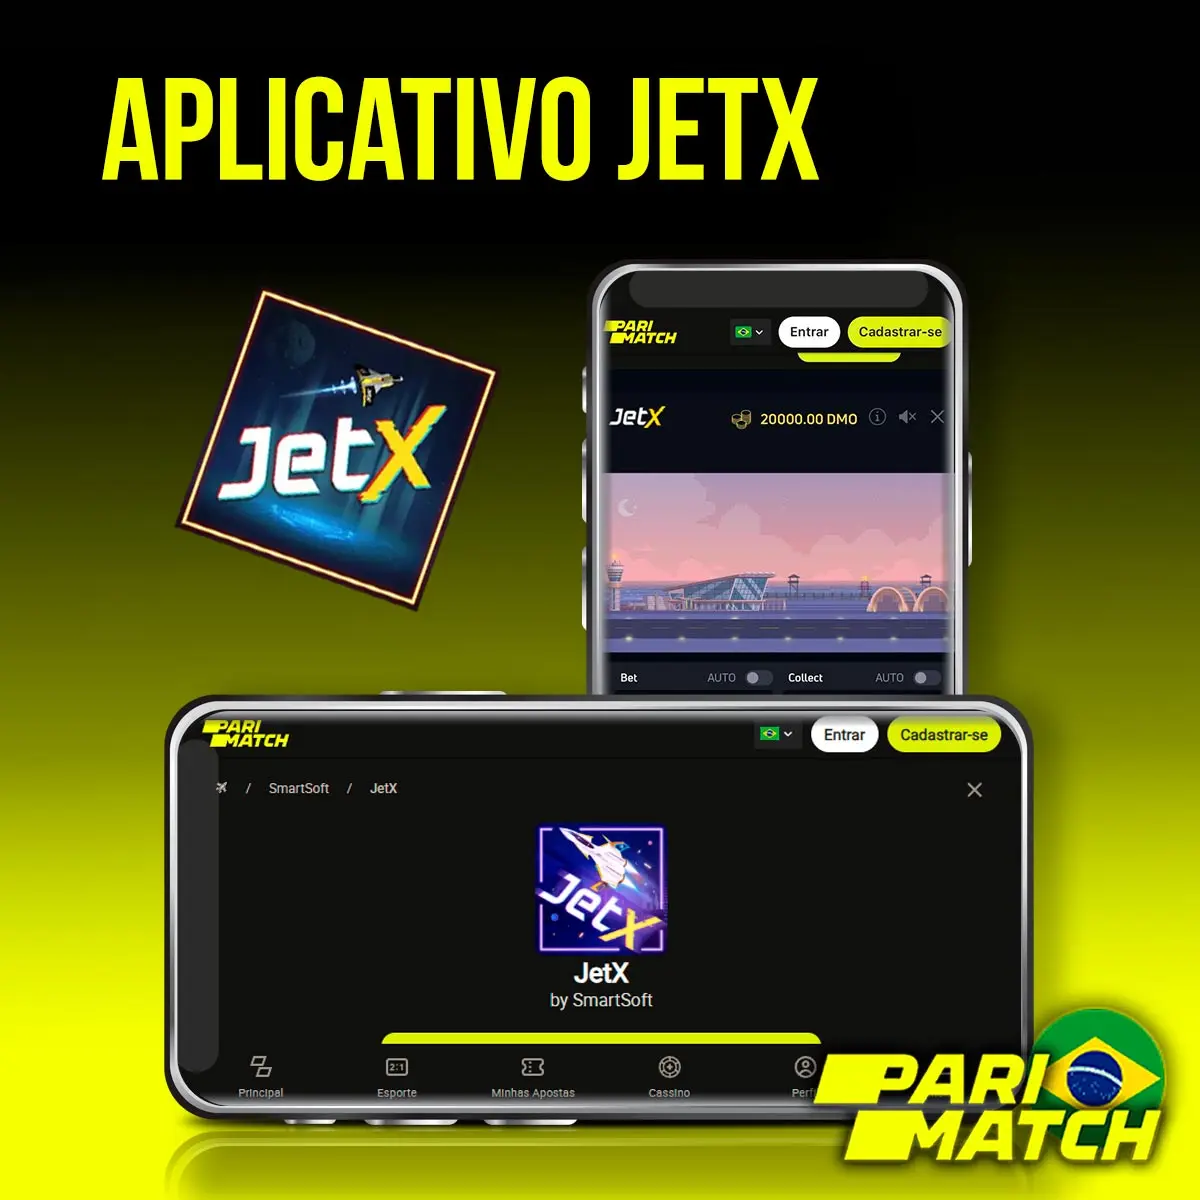 Aplicativo da Parimatch para jogar JetX